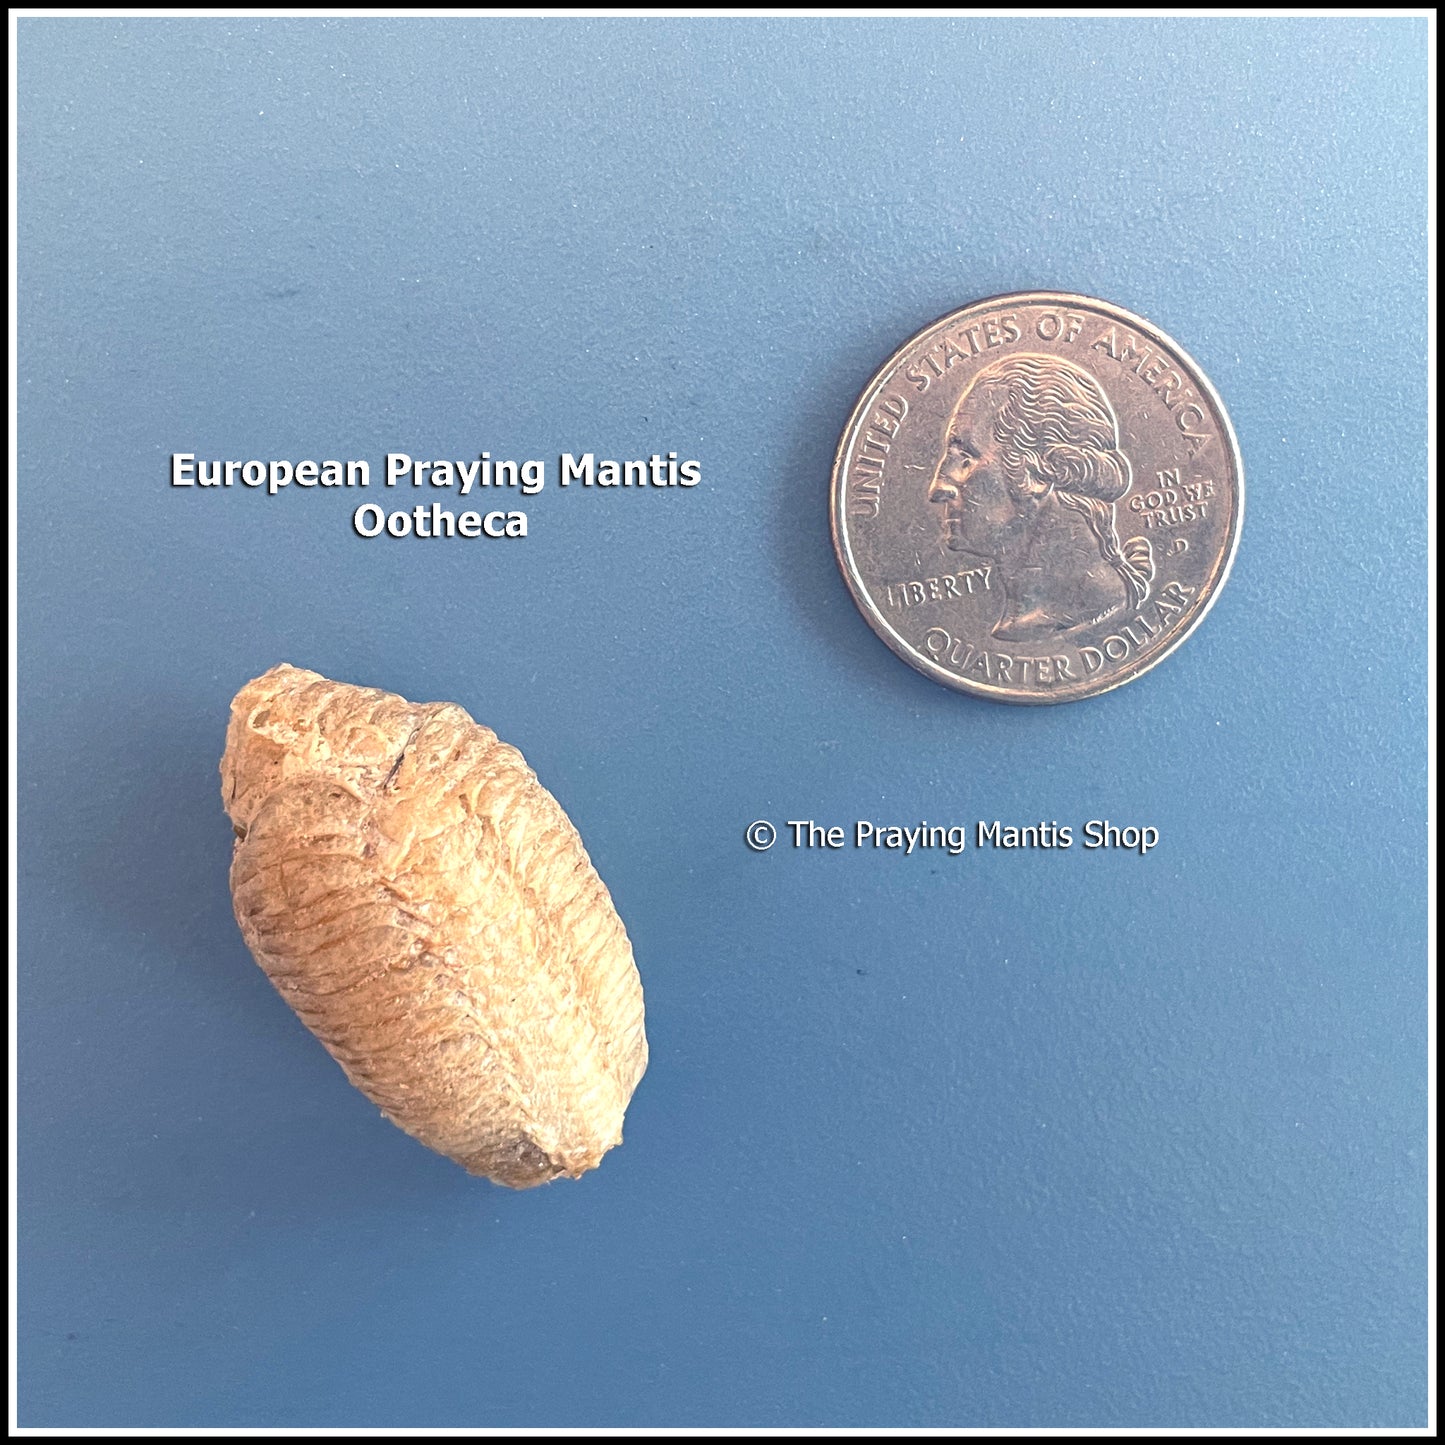 Praying Mantis Egg Case (Ootheca) - European